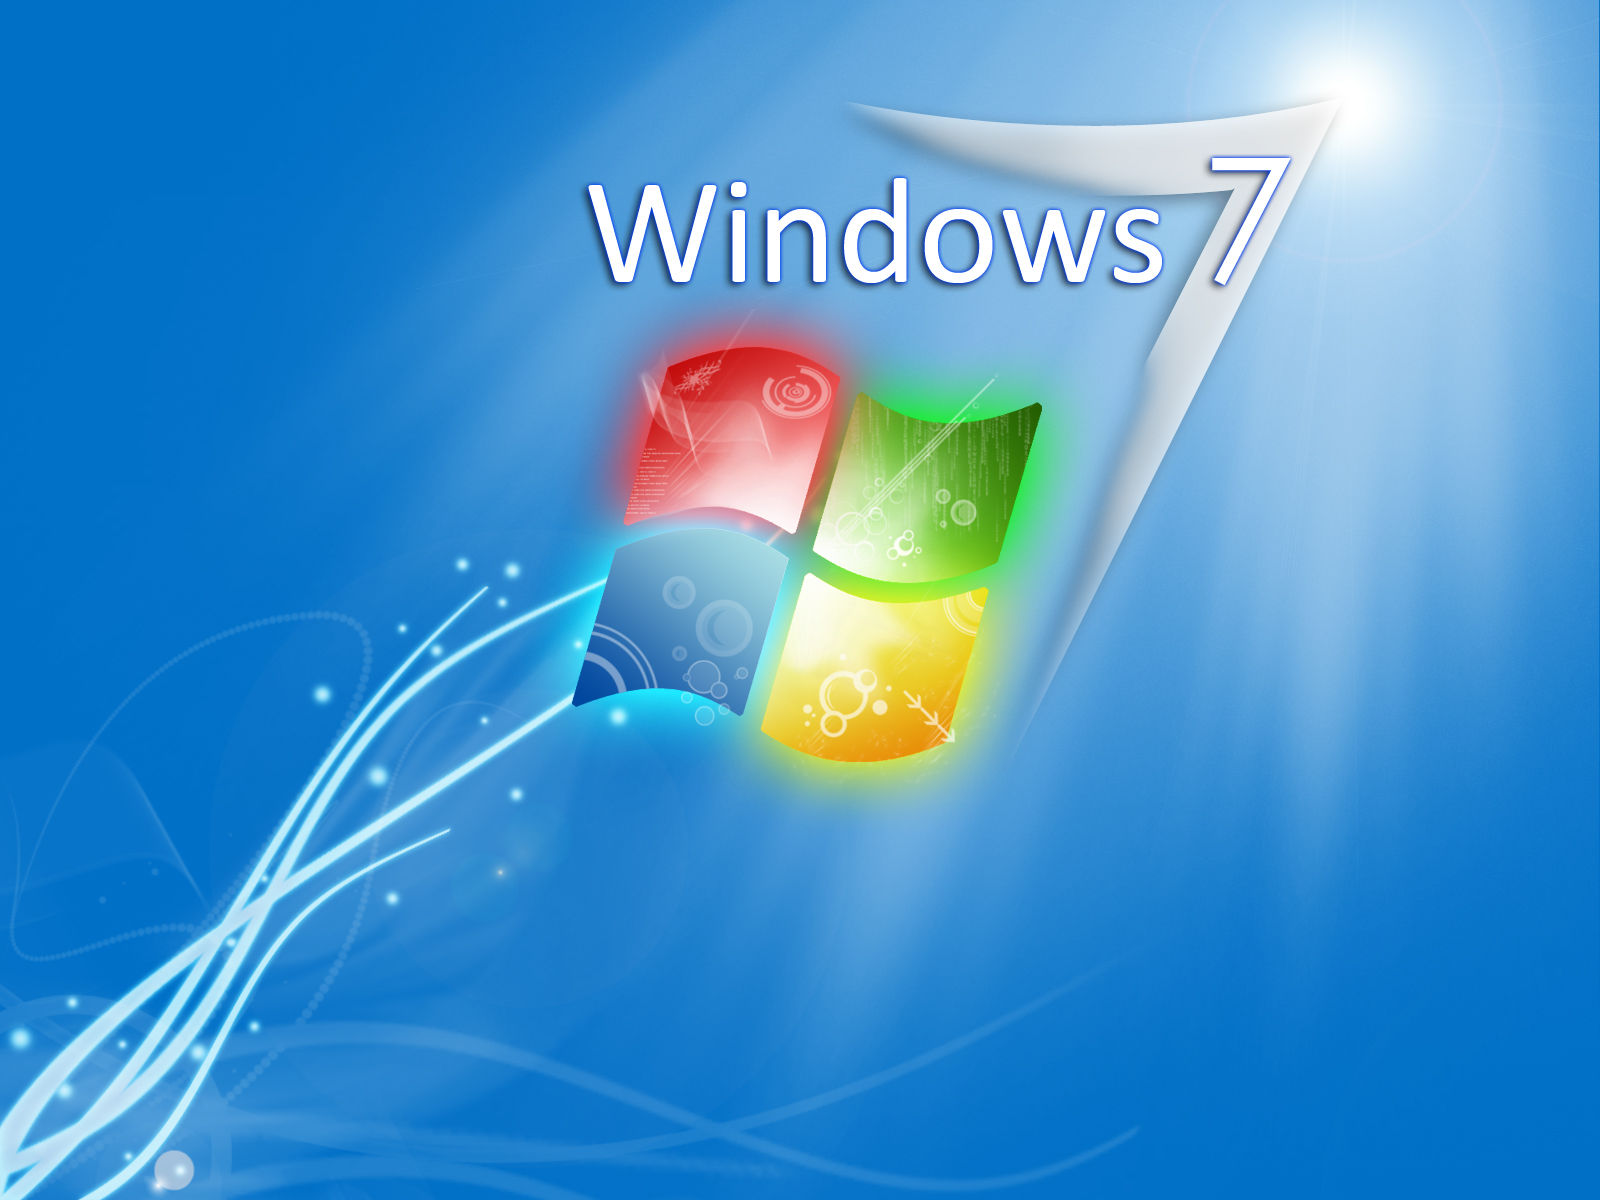 http://2.bp.blogspot.com/-74tbzUJcq8A/T-nSsNHIX_I/AAAAAAAABoU/howjIllzViU/s1600/windows+7+wallpaper+hd+11.jpg